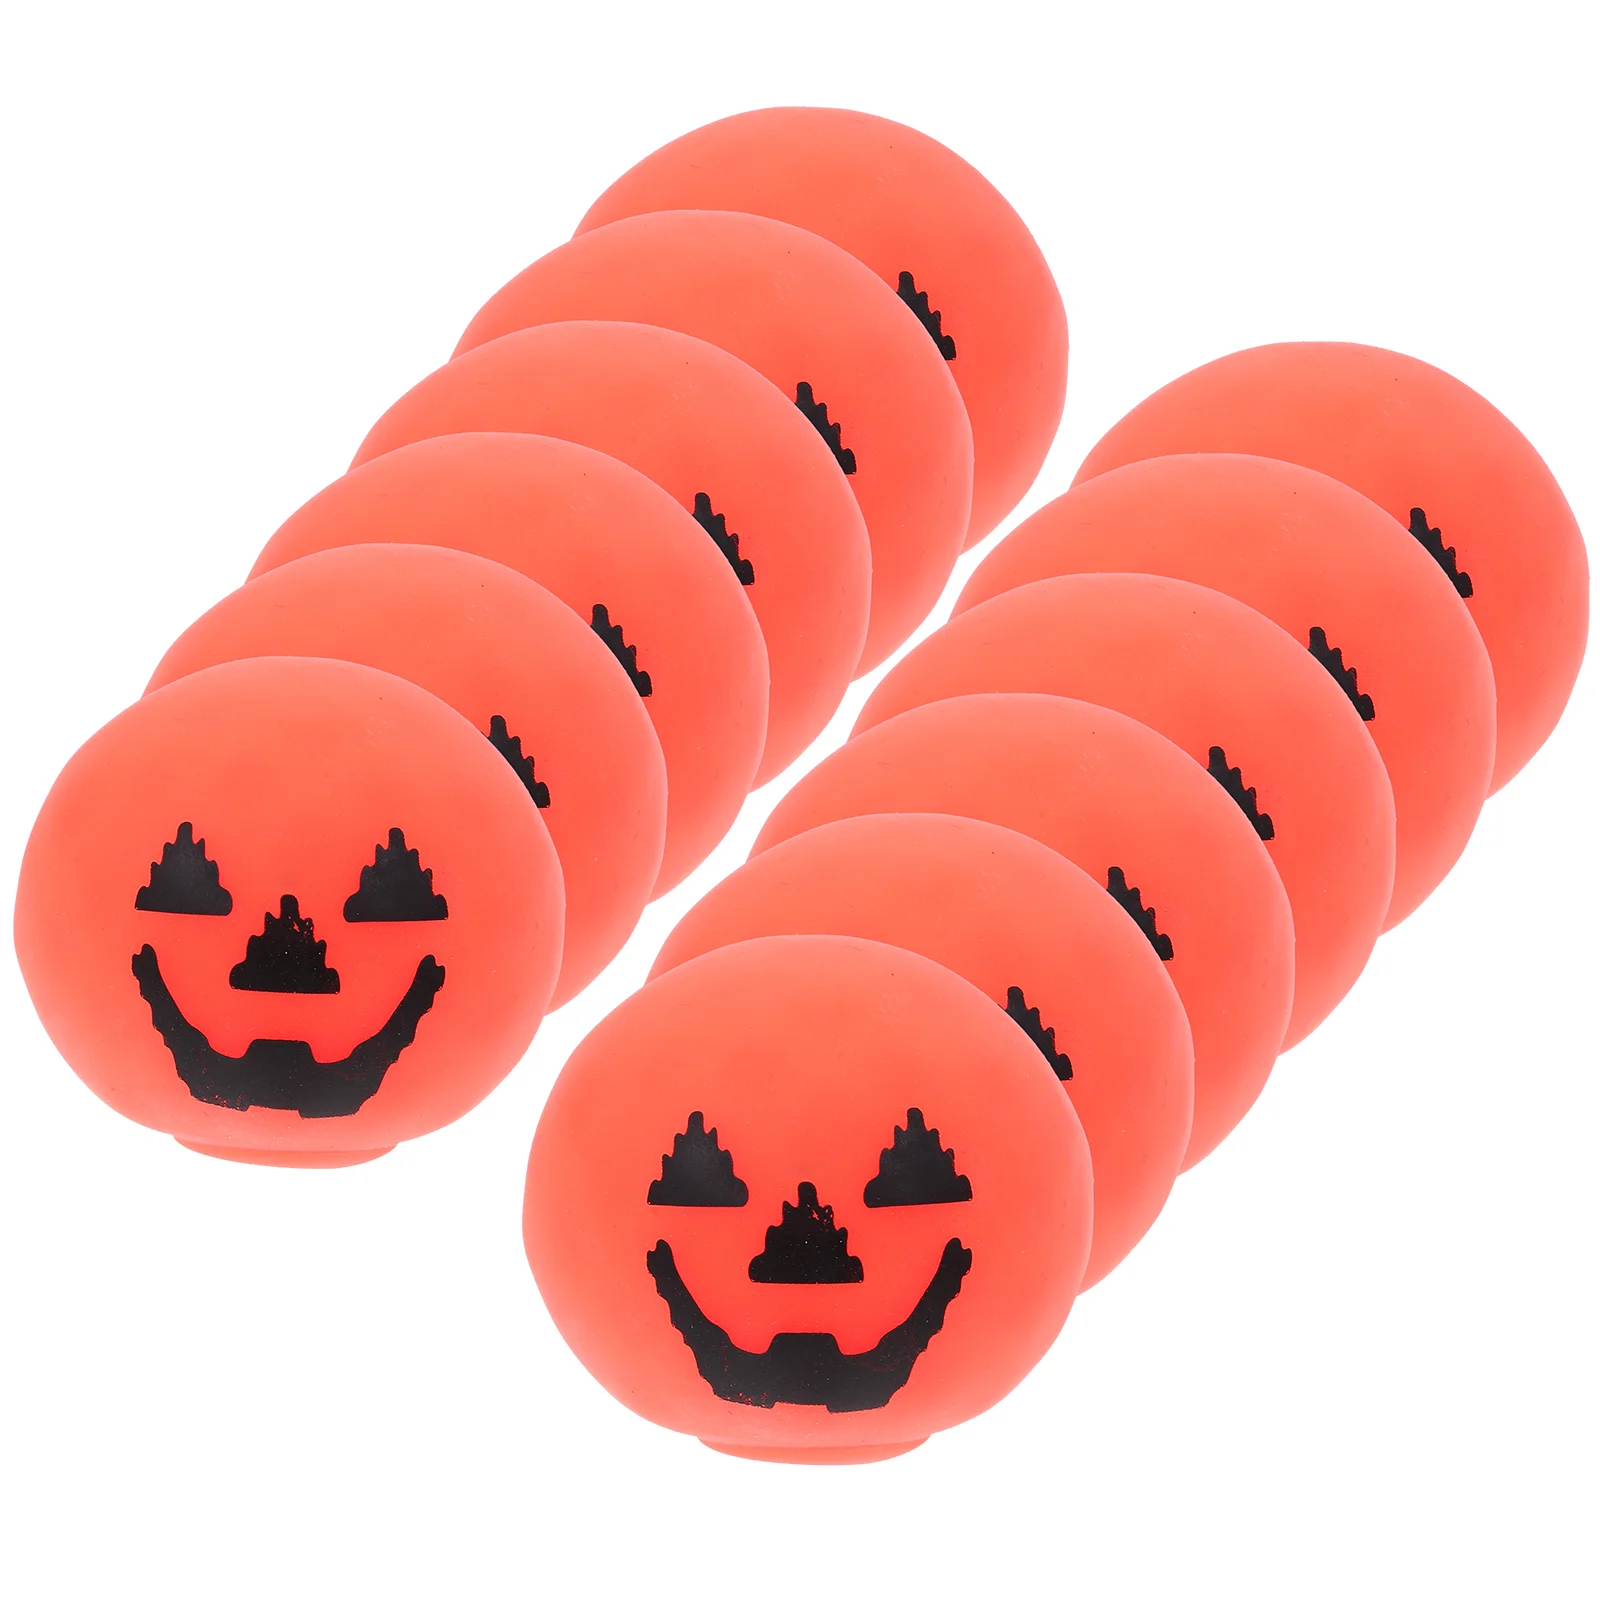 

12 Pcs Funny Stress Prop Halloween Pumpkin TPR Elasticity Squeeze Decorative Horror Soft Glue Party Accessory Relief Balls